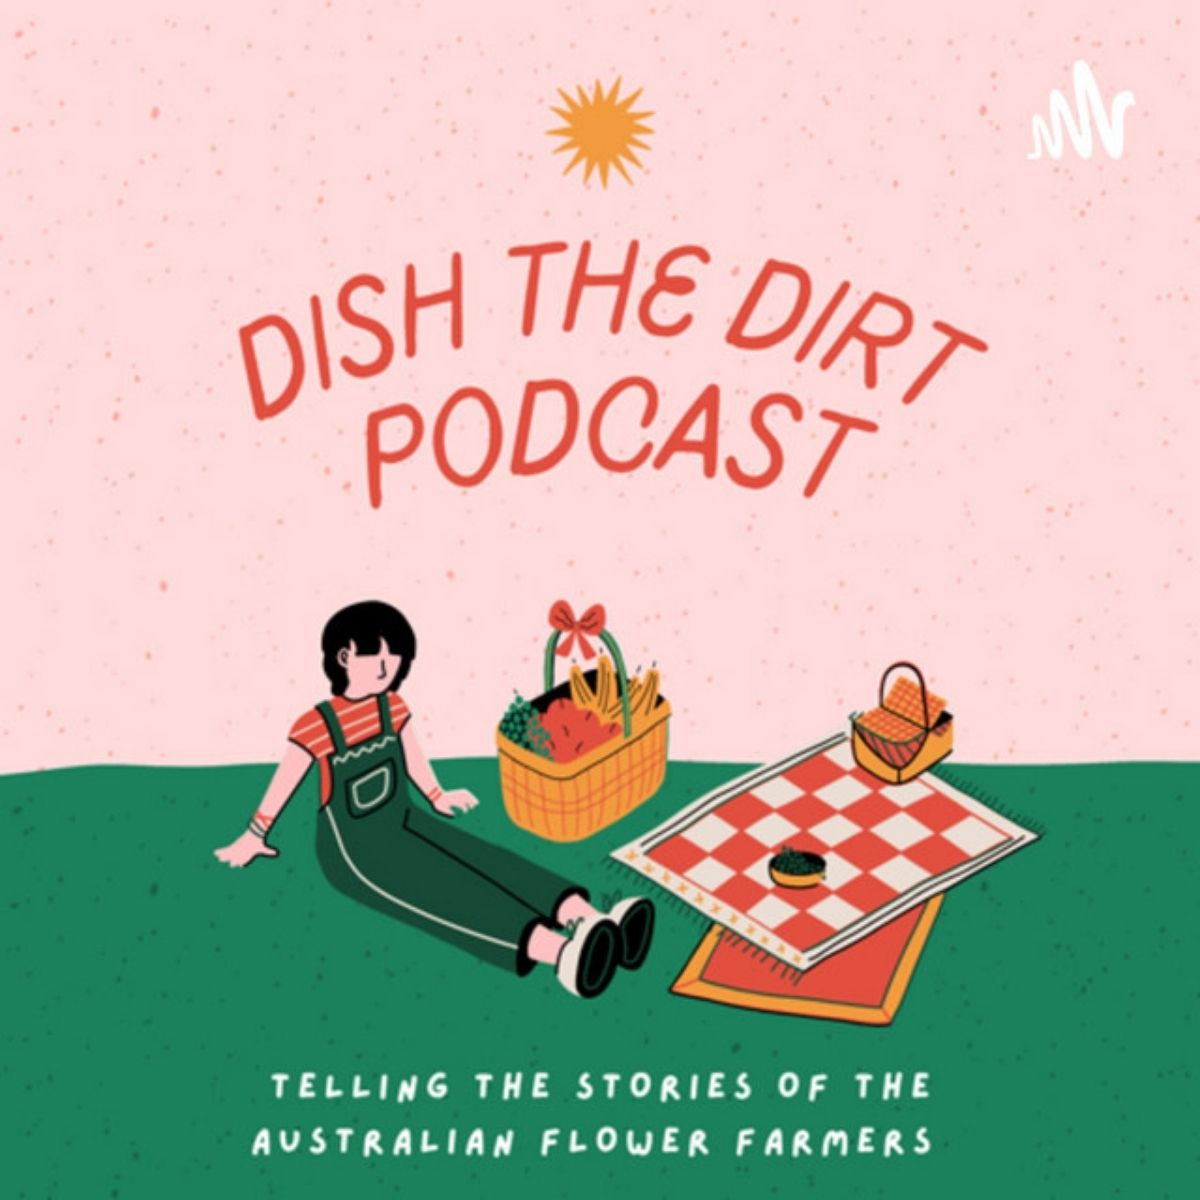 Dish the dirt on thursd - australian flower farming podcast